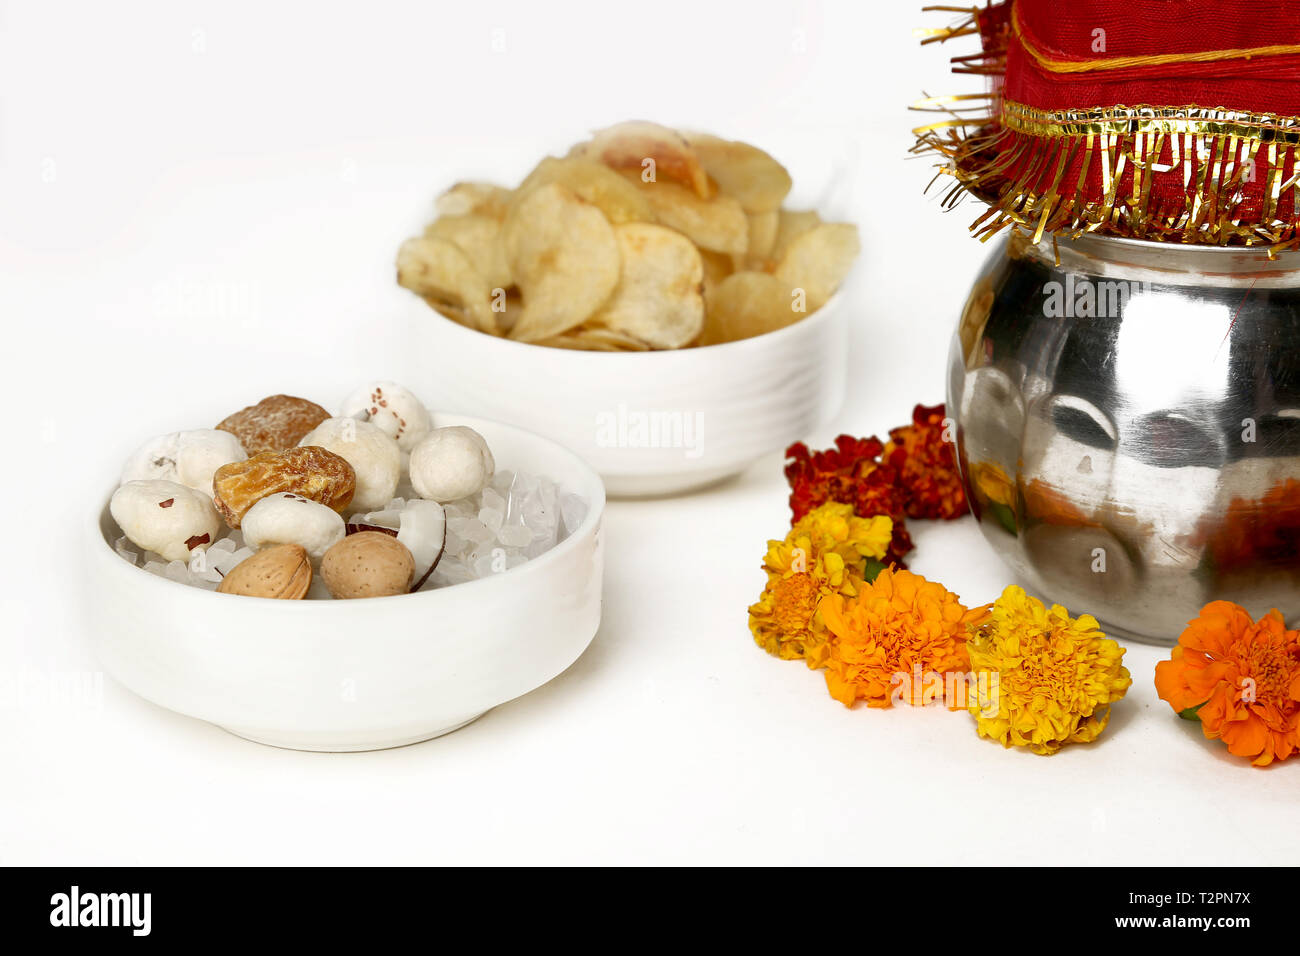 Kalash avec noix de coco et chunni avec décoration florale de navratri pooja. Photo de fruits secs et les chips de pomme de terre dans le bol. Isolé sur le bac blanc Banque D'Images